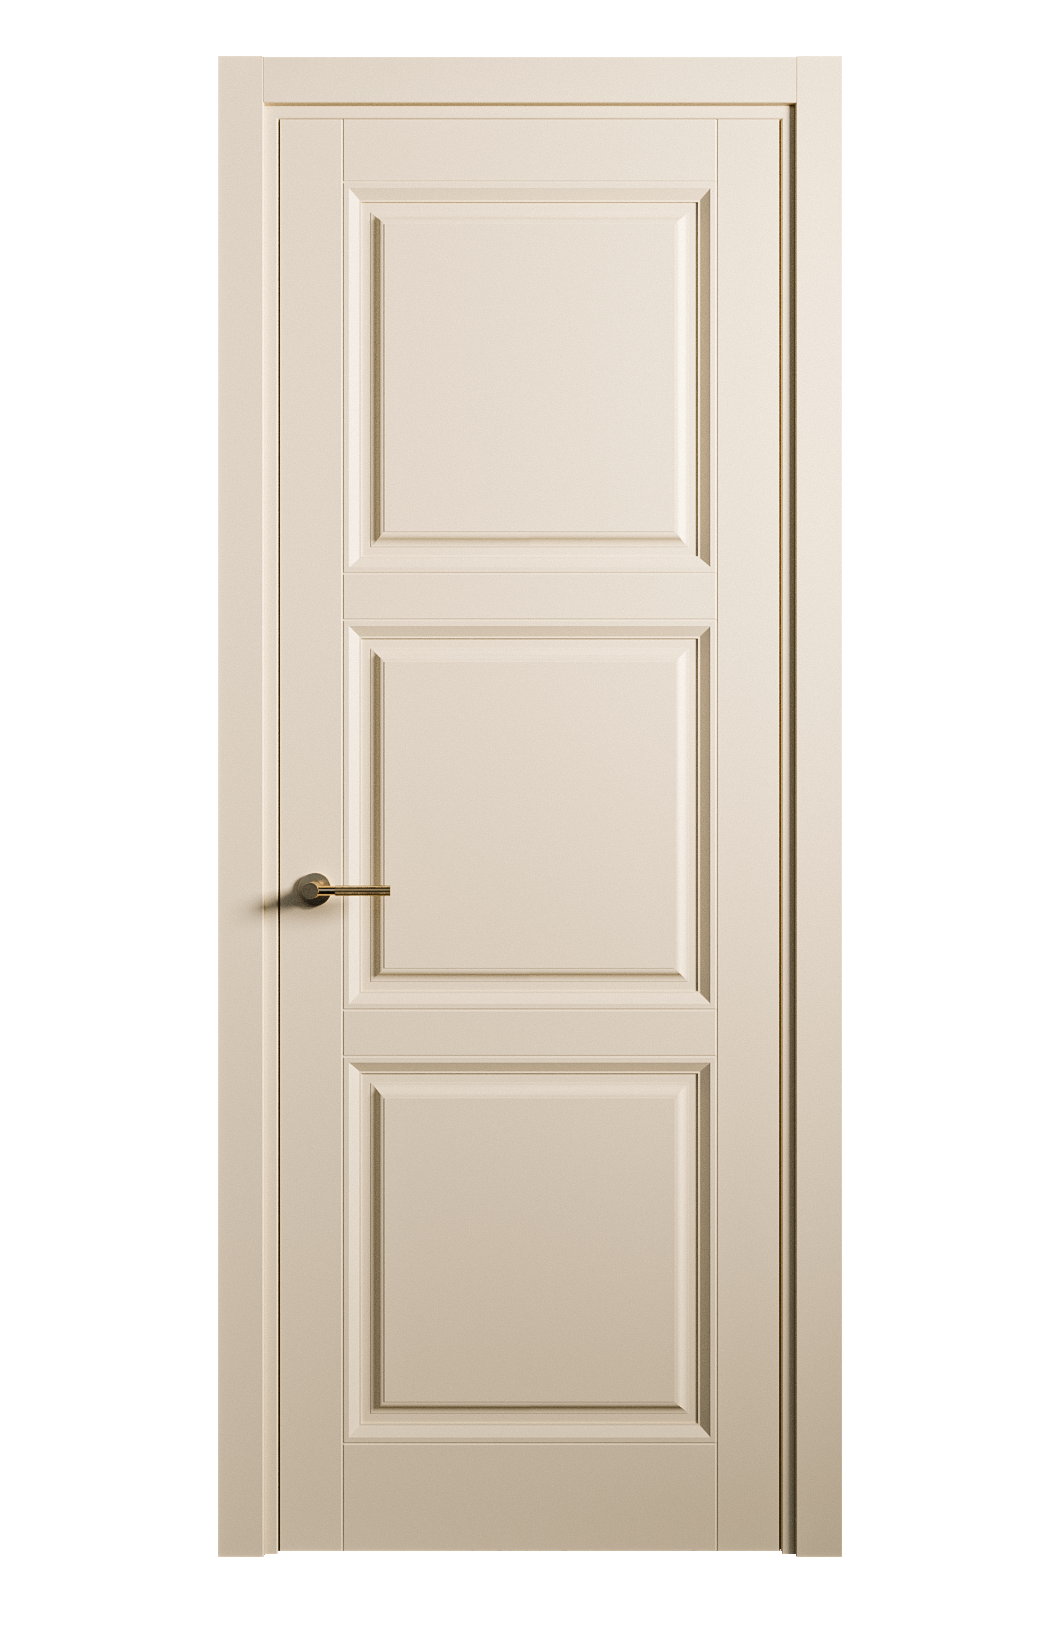 Межкомнатная дверь Venezia-3 глухая эмаль ral 1015 25715